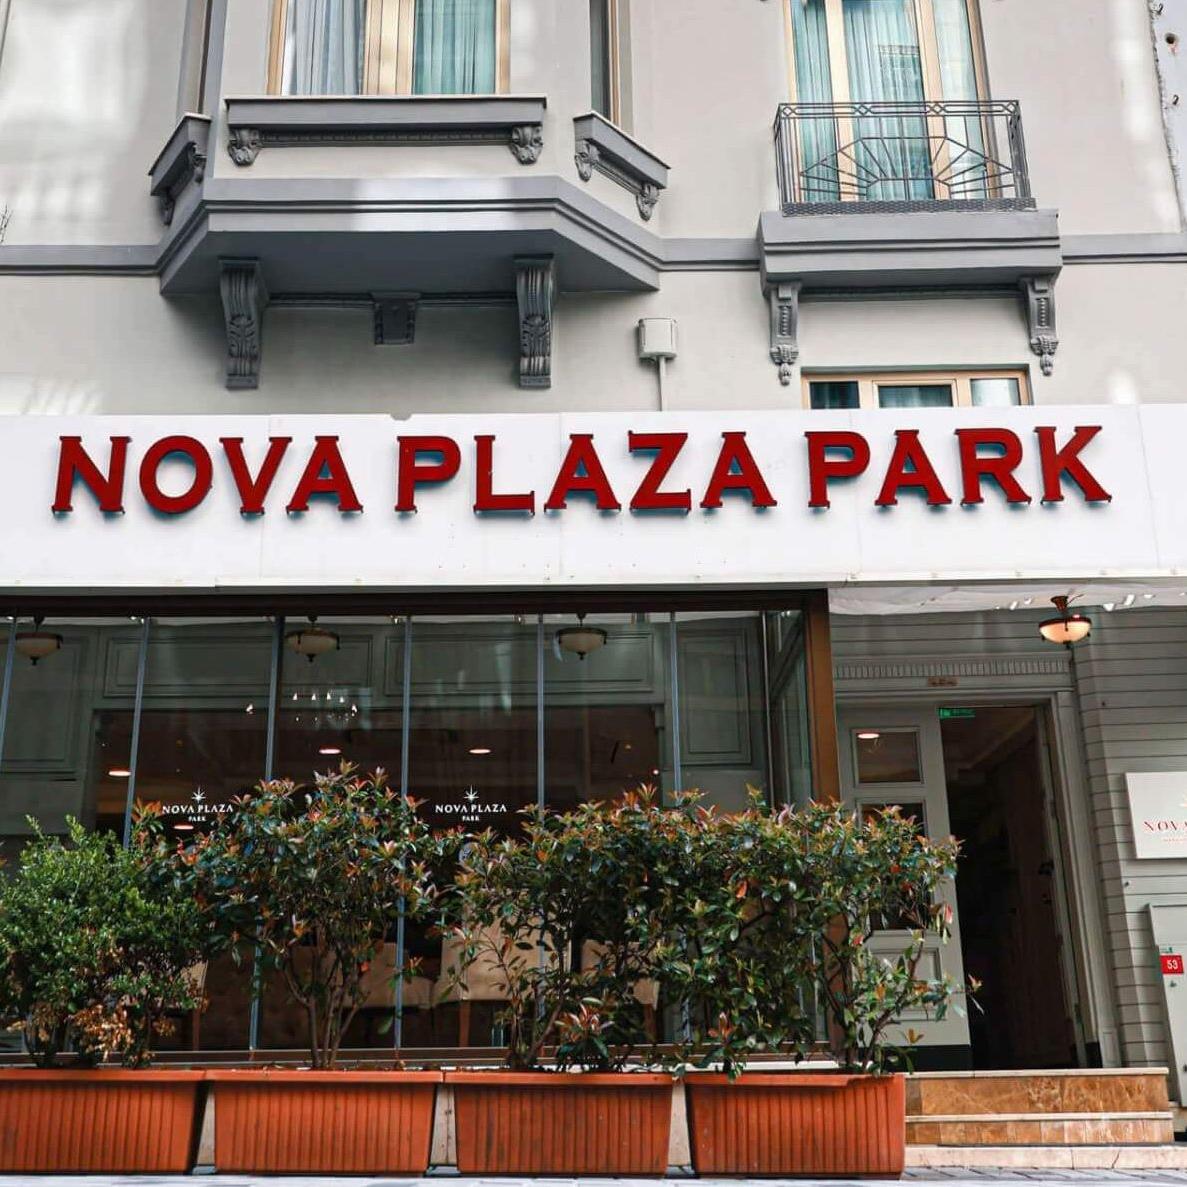 Nova Plaza Park Hotel napa plaza hotel adults only